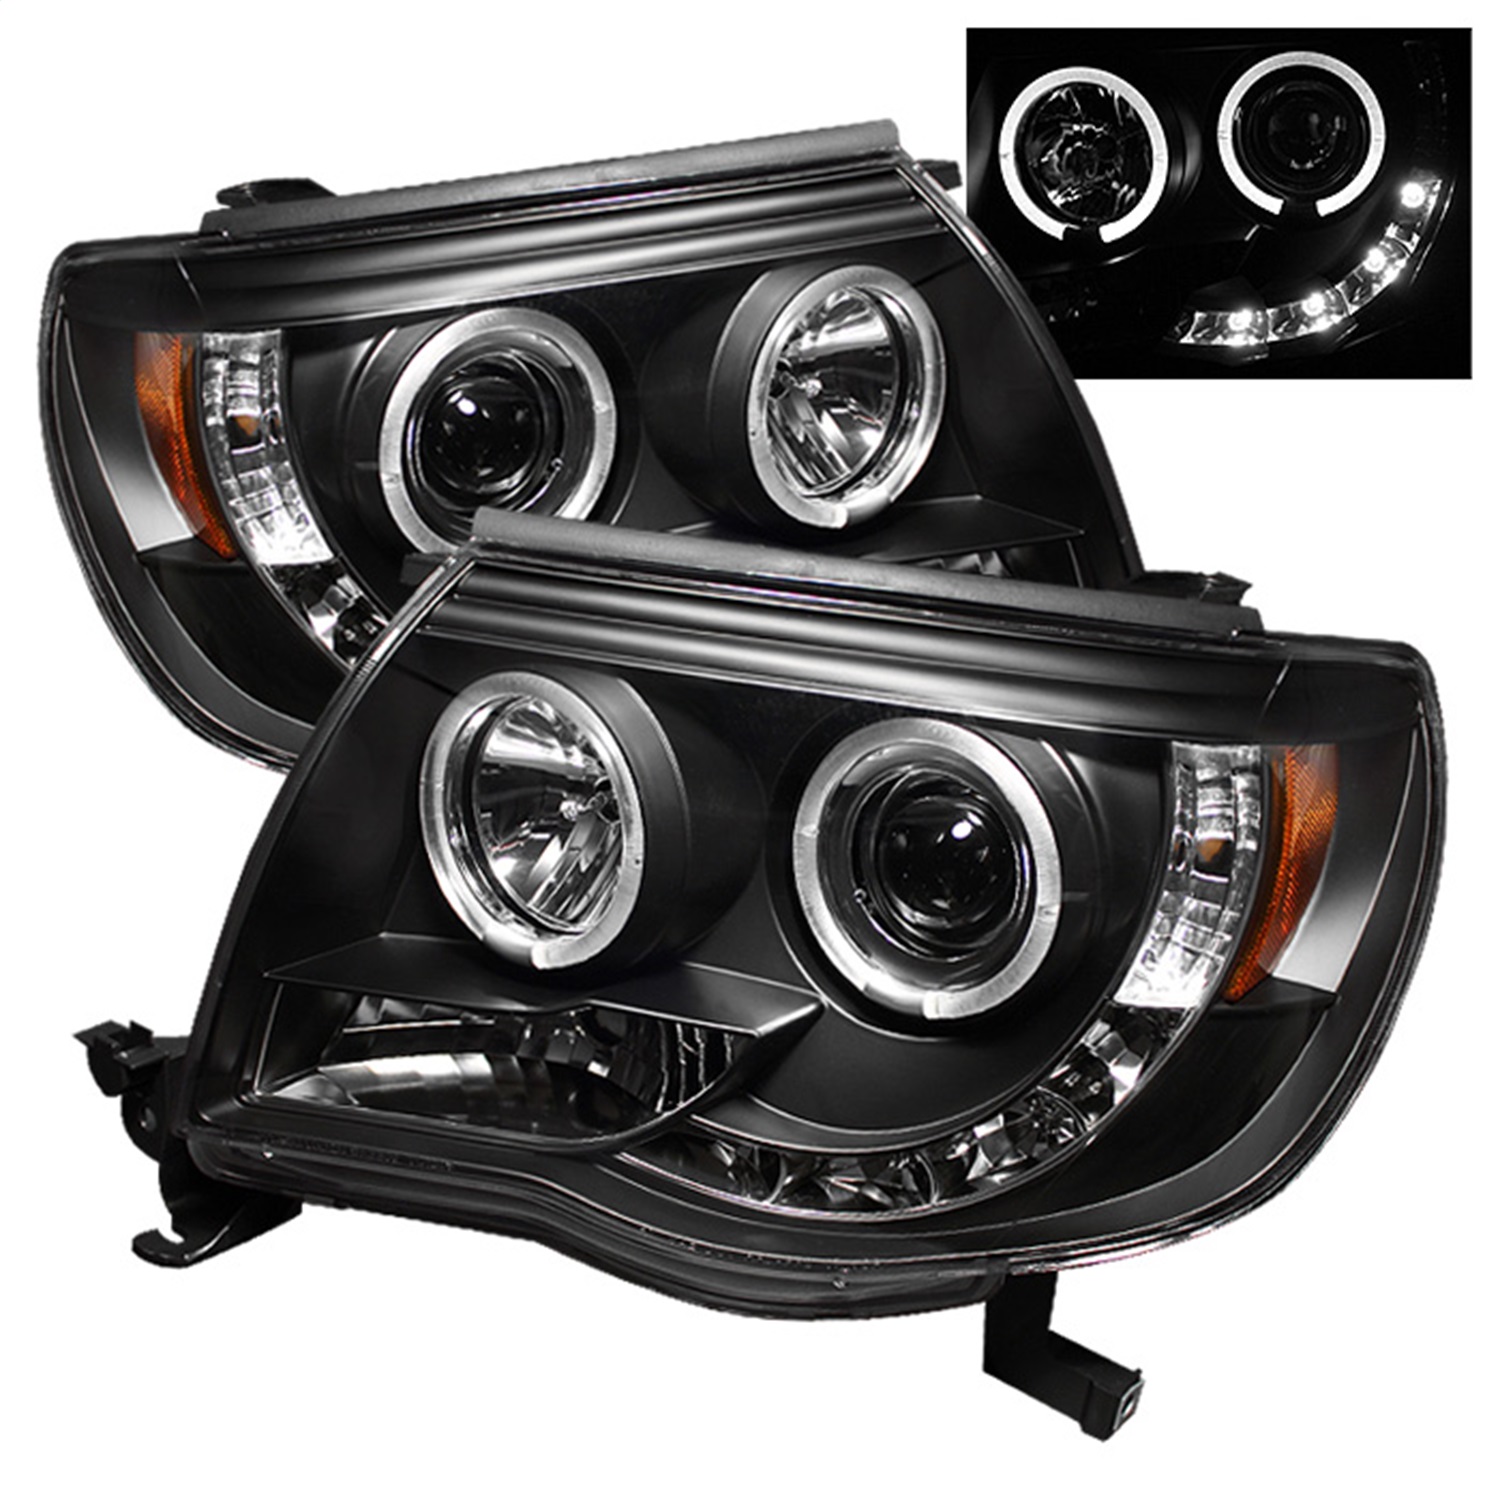 Spyder Auto 5011916 Halo LED Projector Headlights Fits 05-11 Tacoma